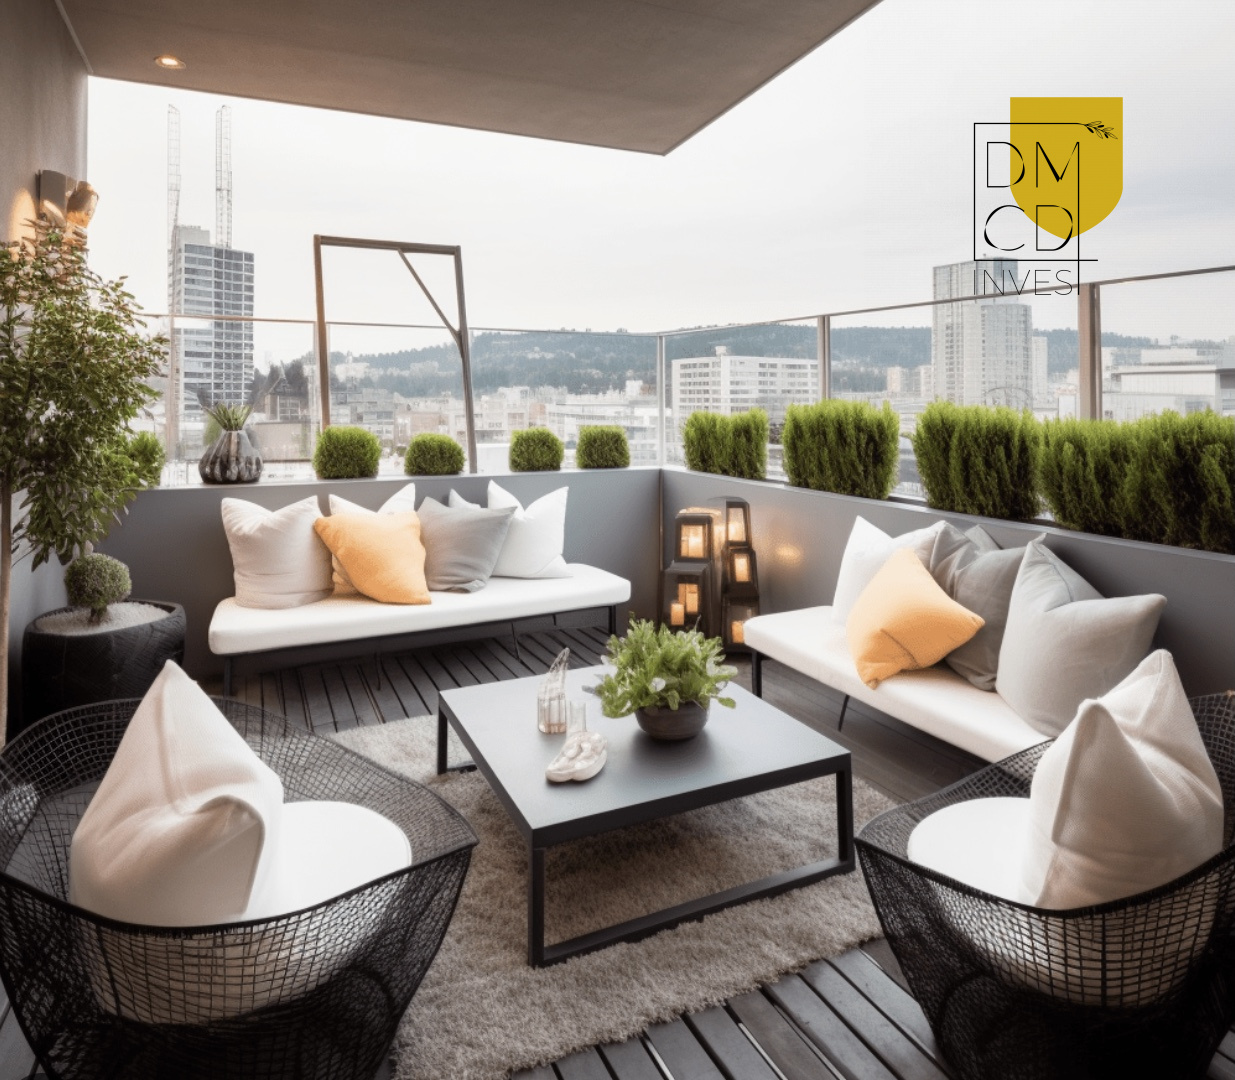 Vente Appartement 90m² 4 Pièces à Marseille (13009) - Dmcd Invest